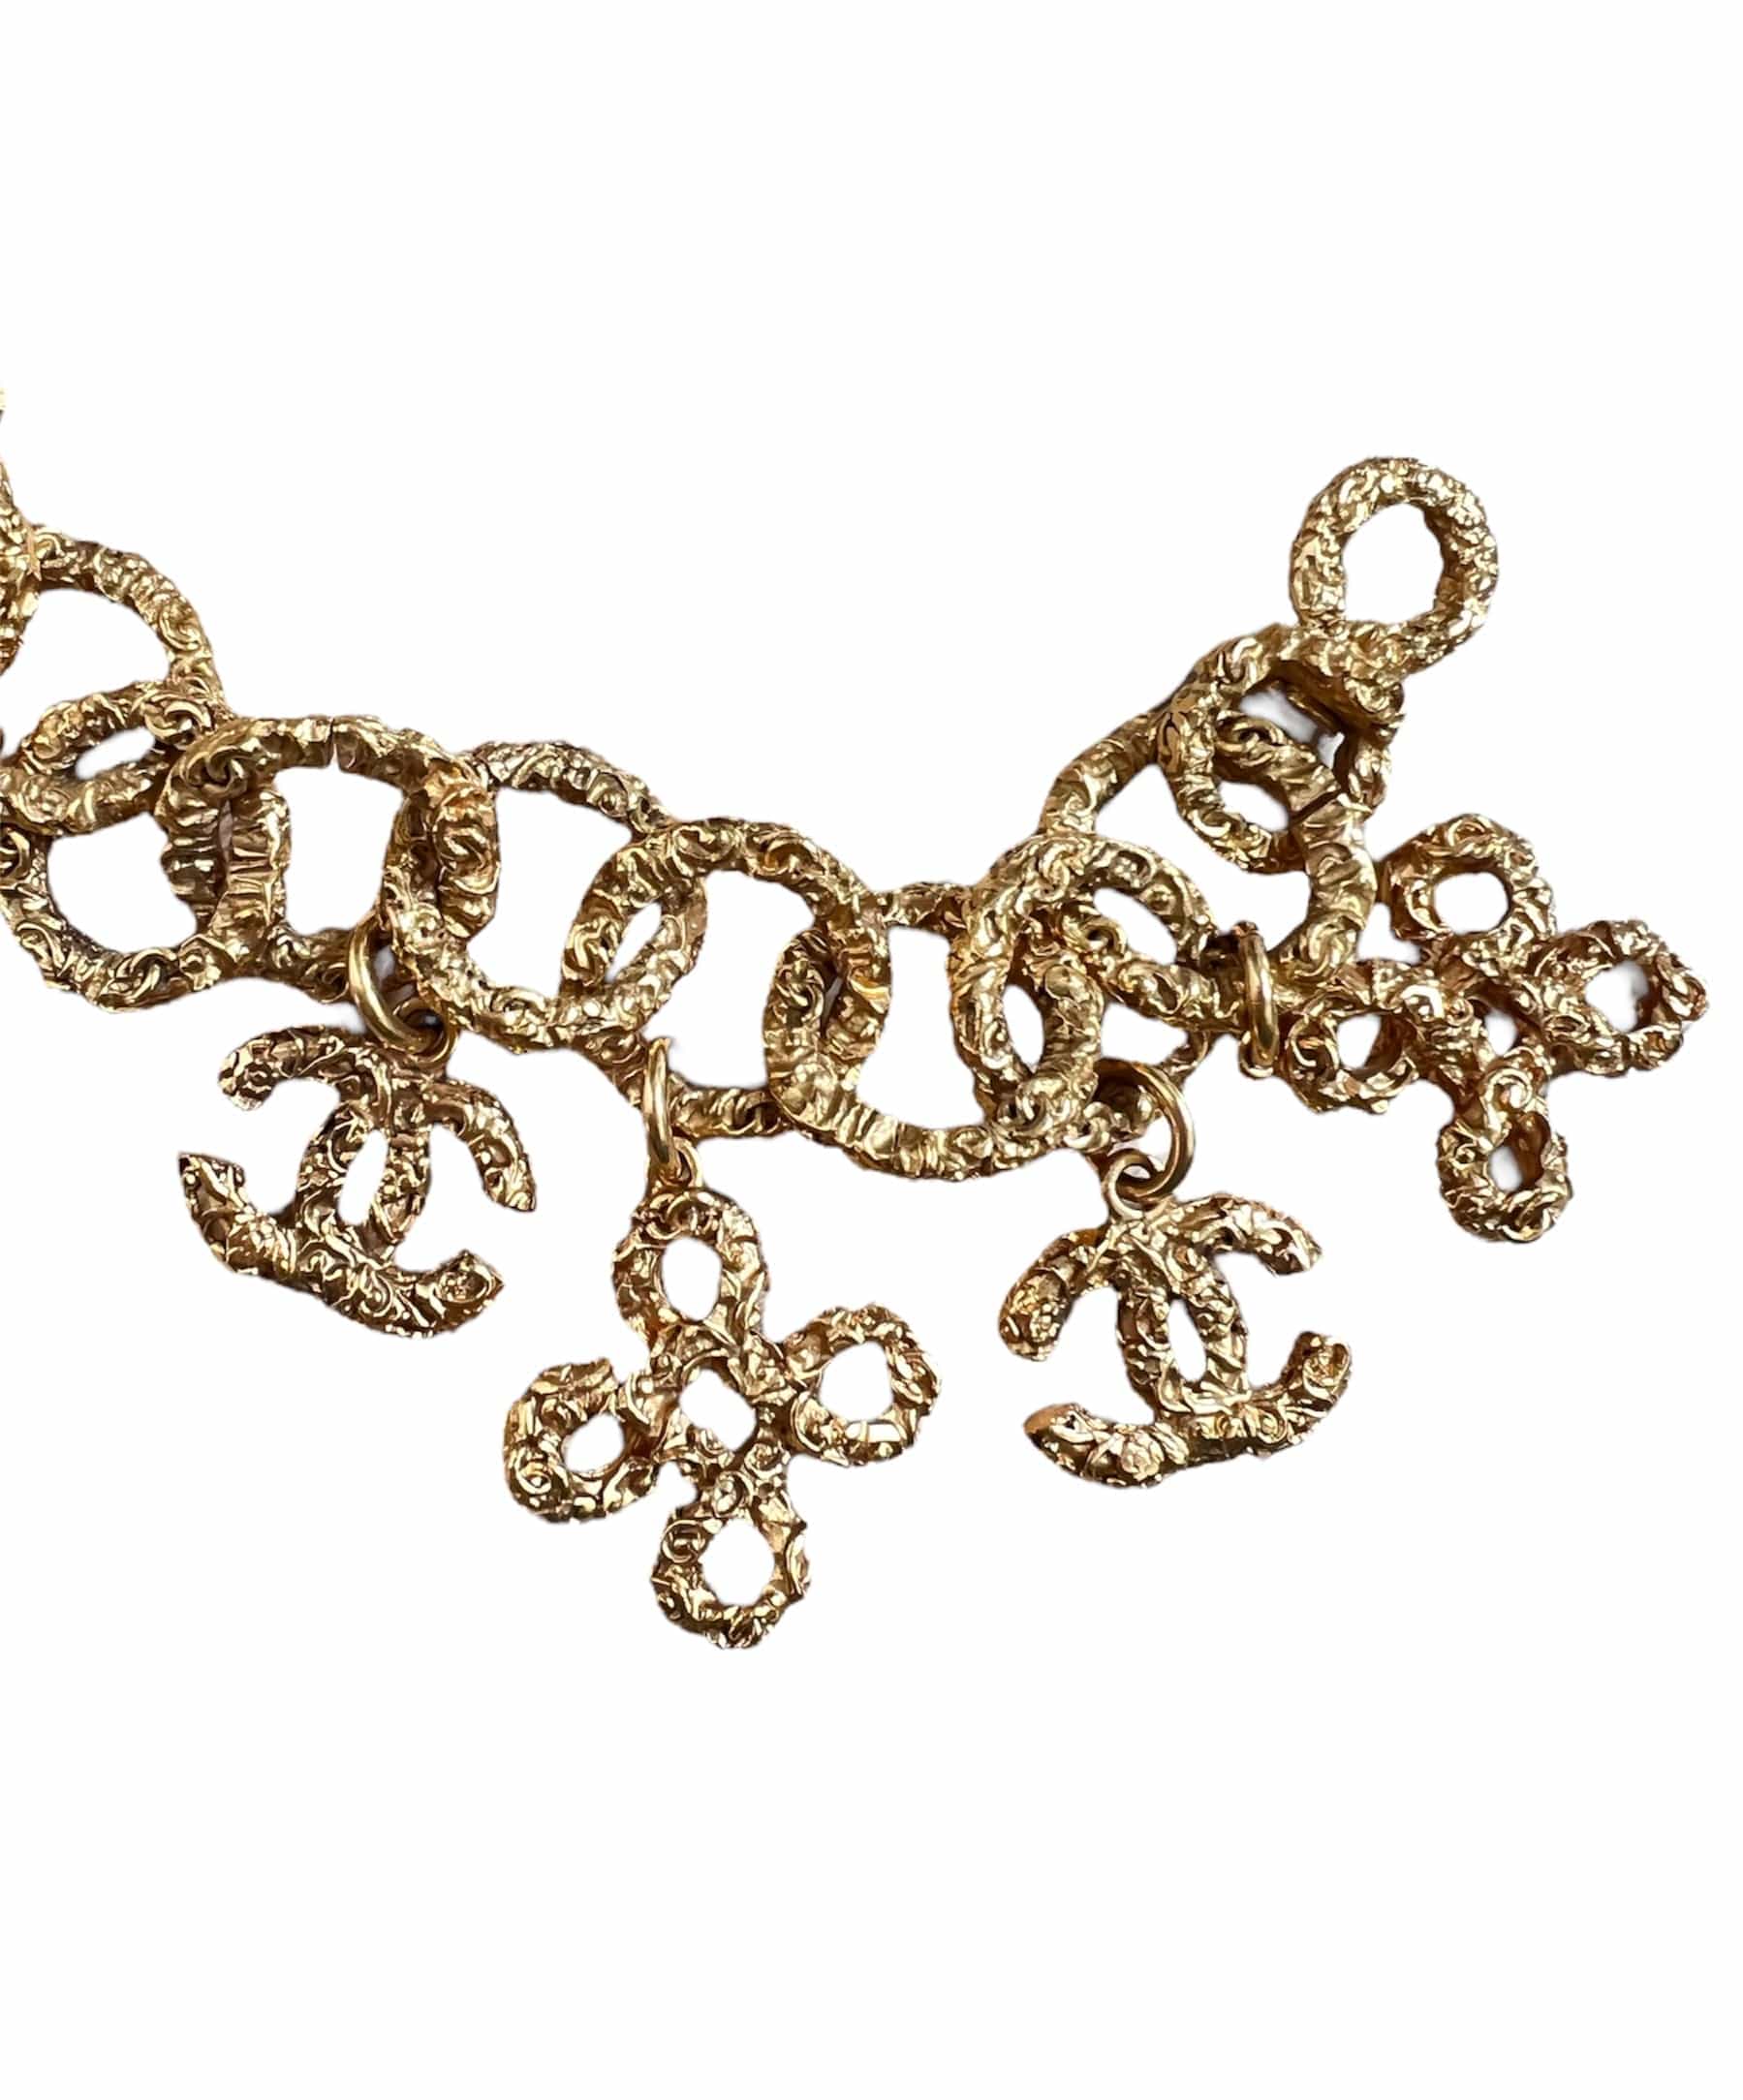 Vintage Chanel Multistrand Oval Charm Bracelet